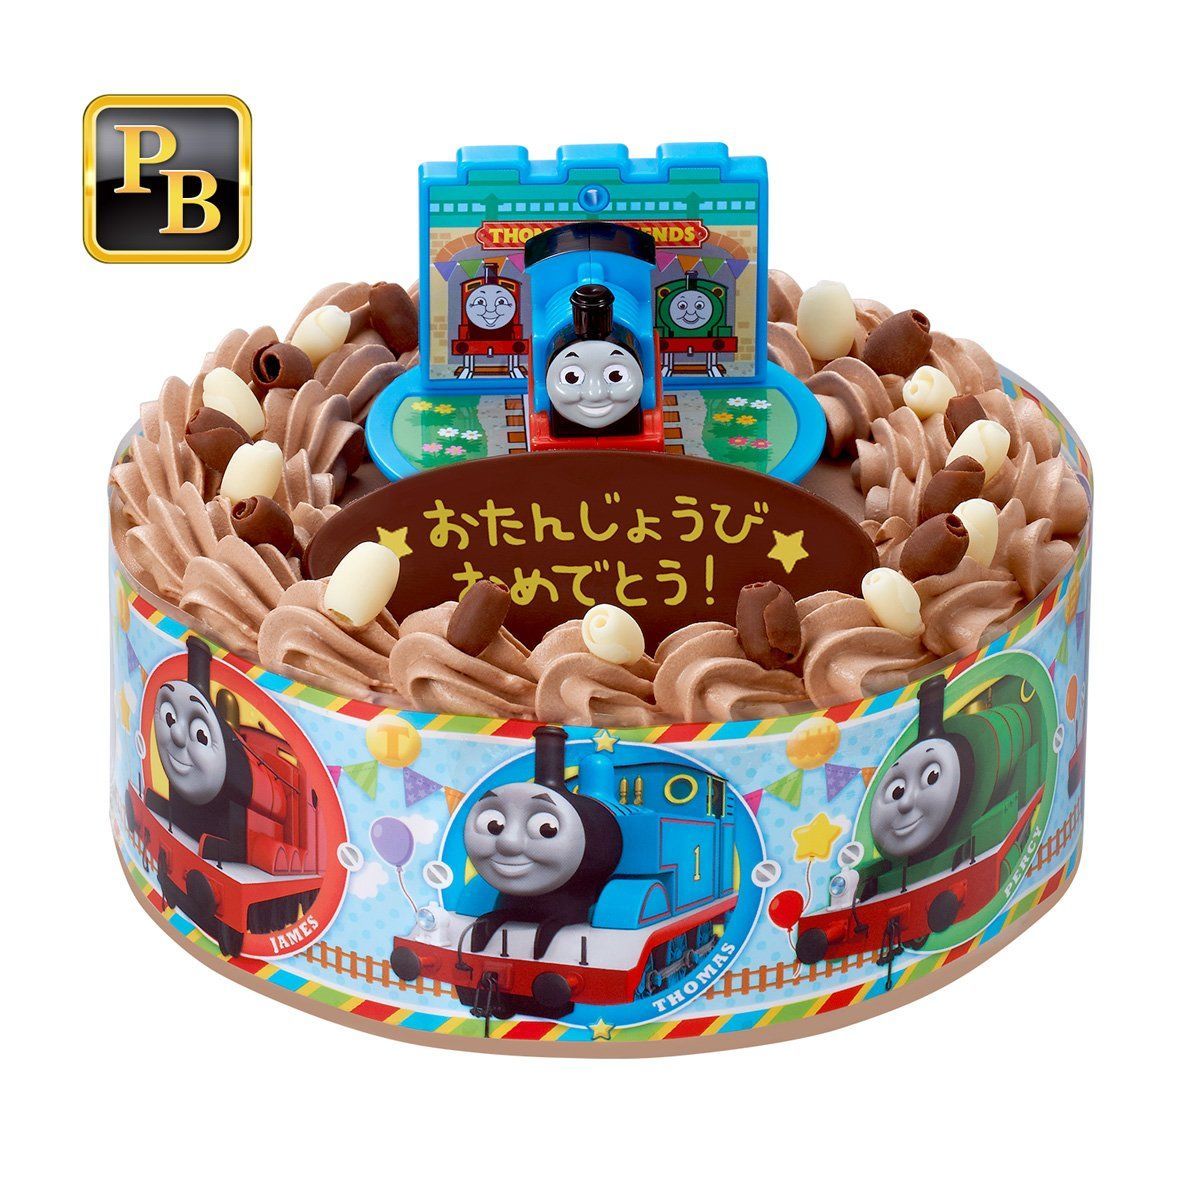 キャラデコお祝いケーキ きかんしゃトーマス チョコ 5号サイズ おもちゃ バンダイナムコグループ公式通販サイト